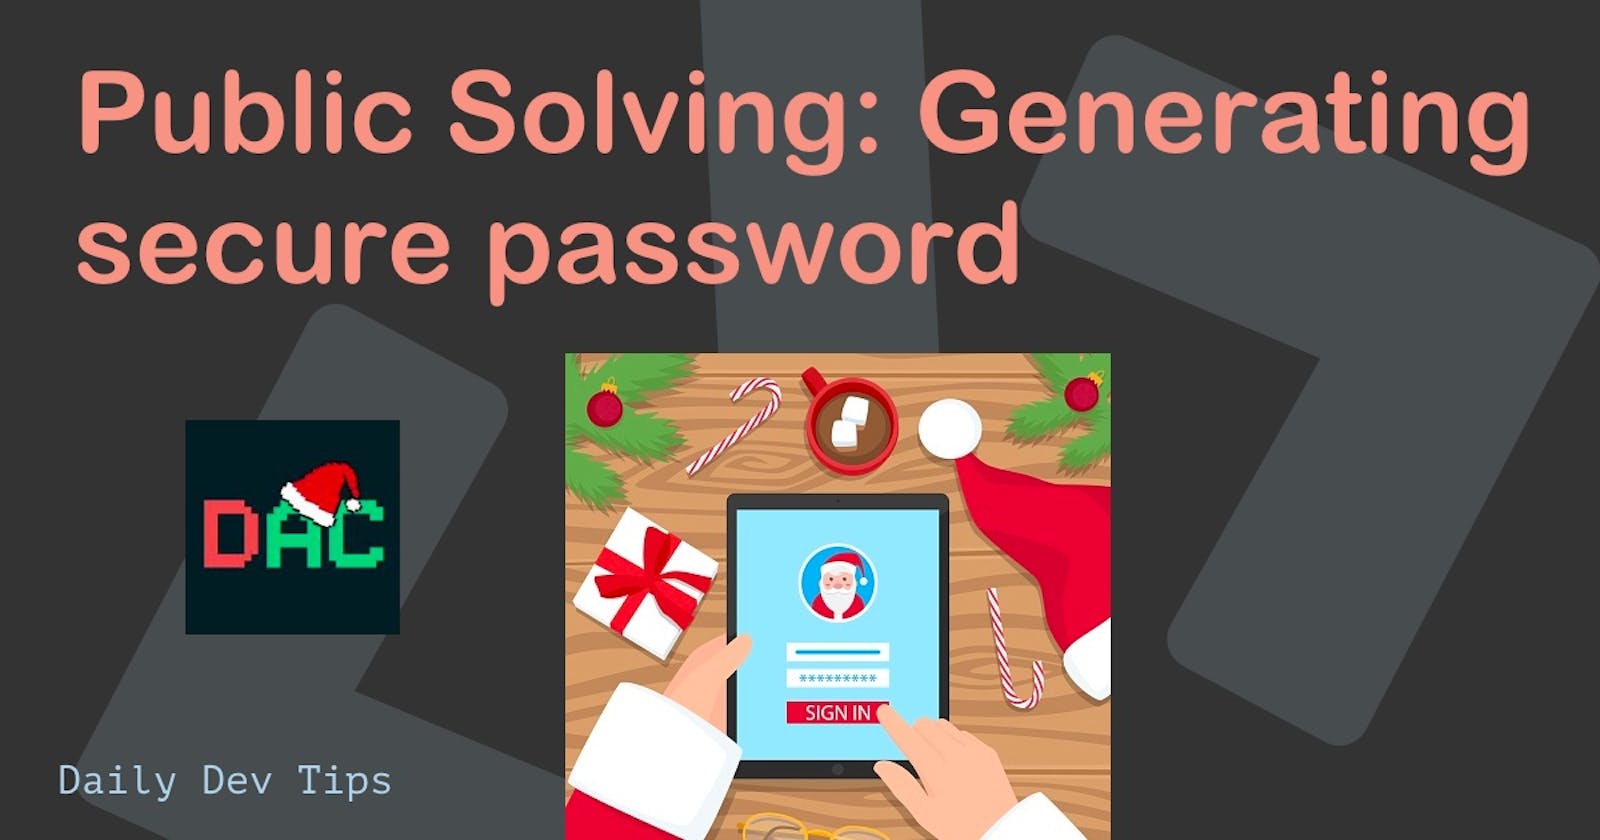 Public Solving: Generating secure password